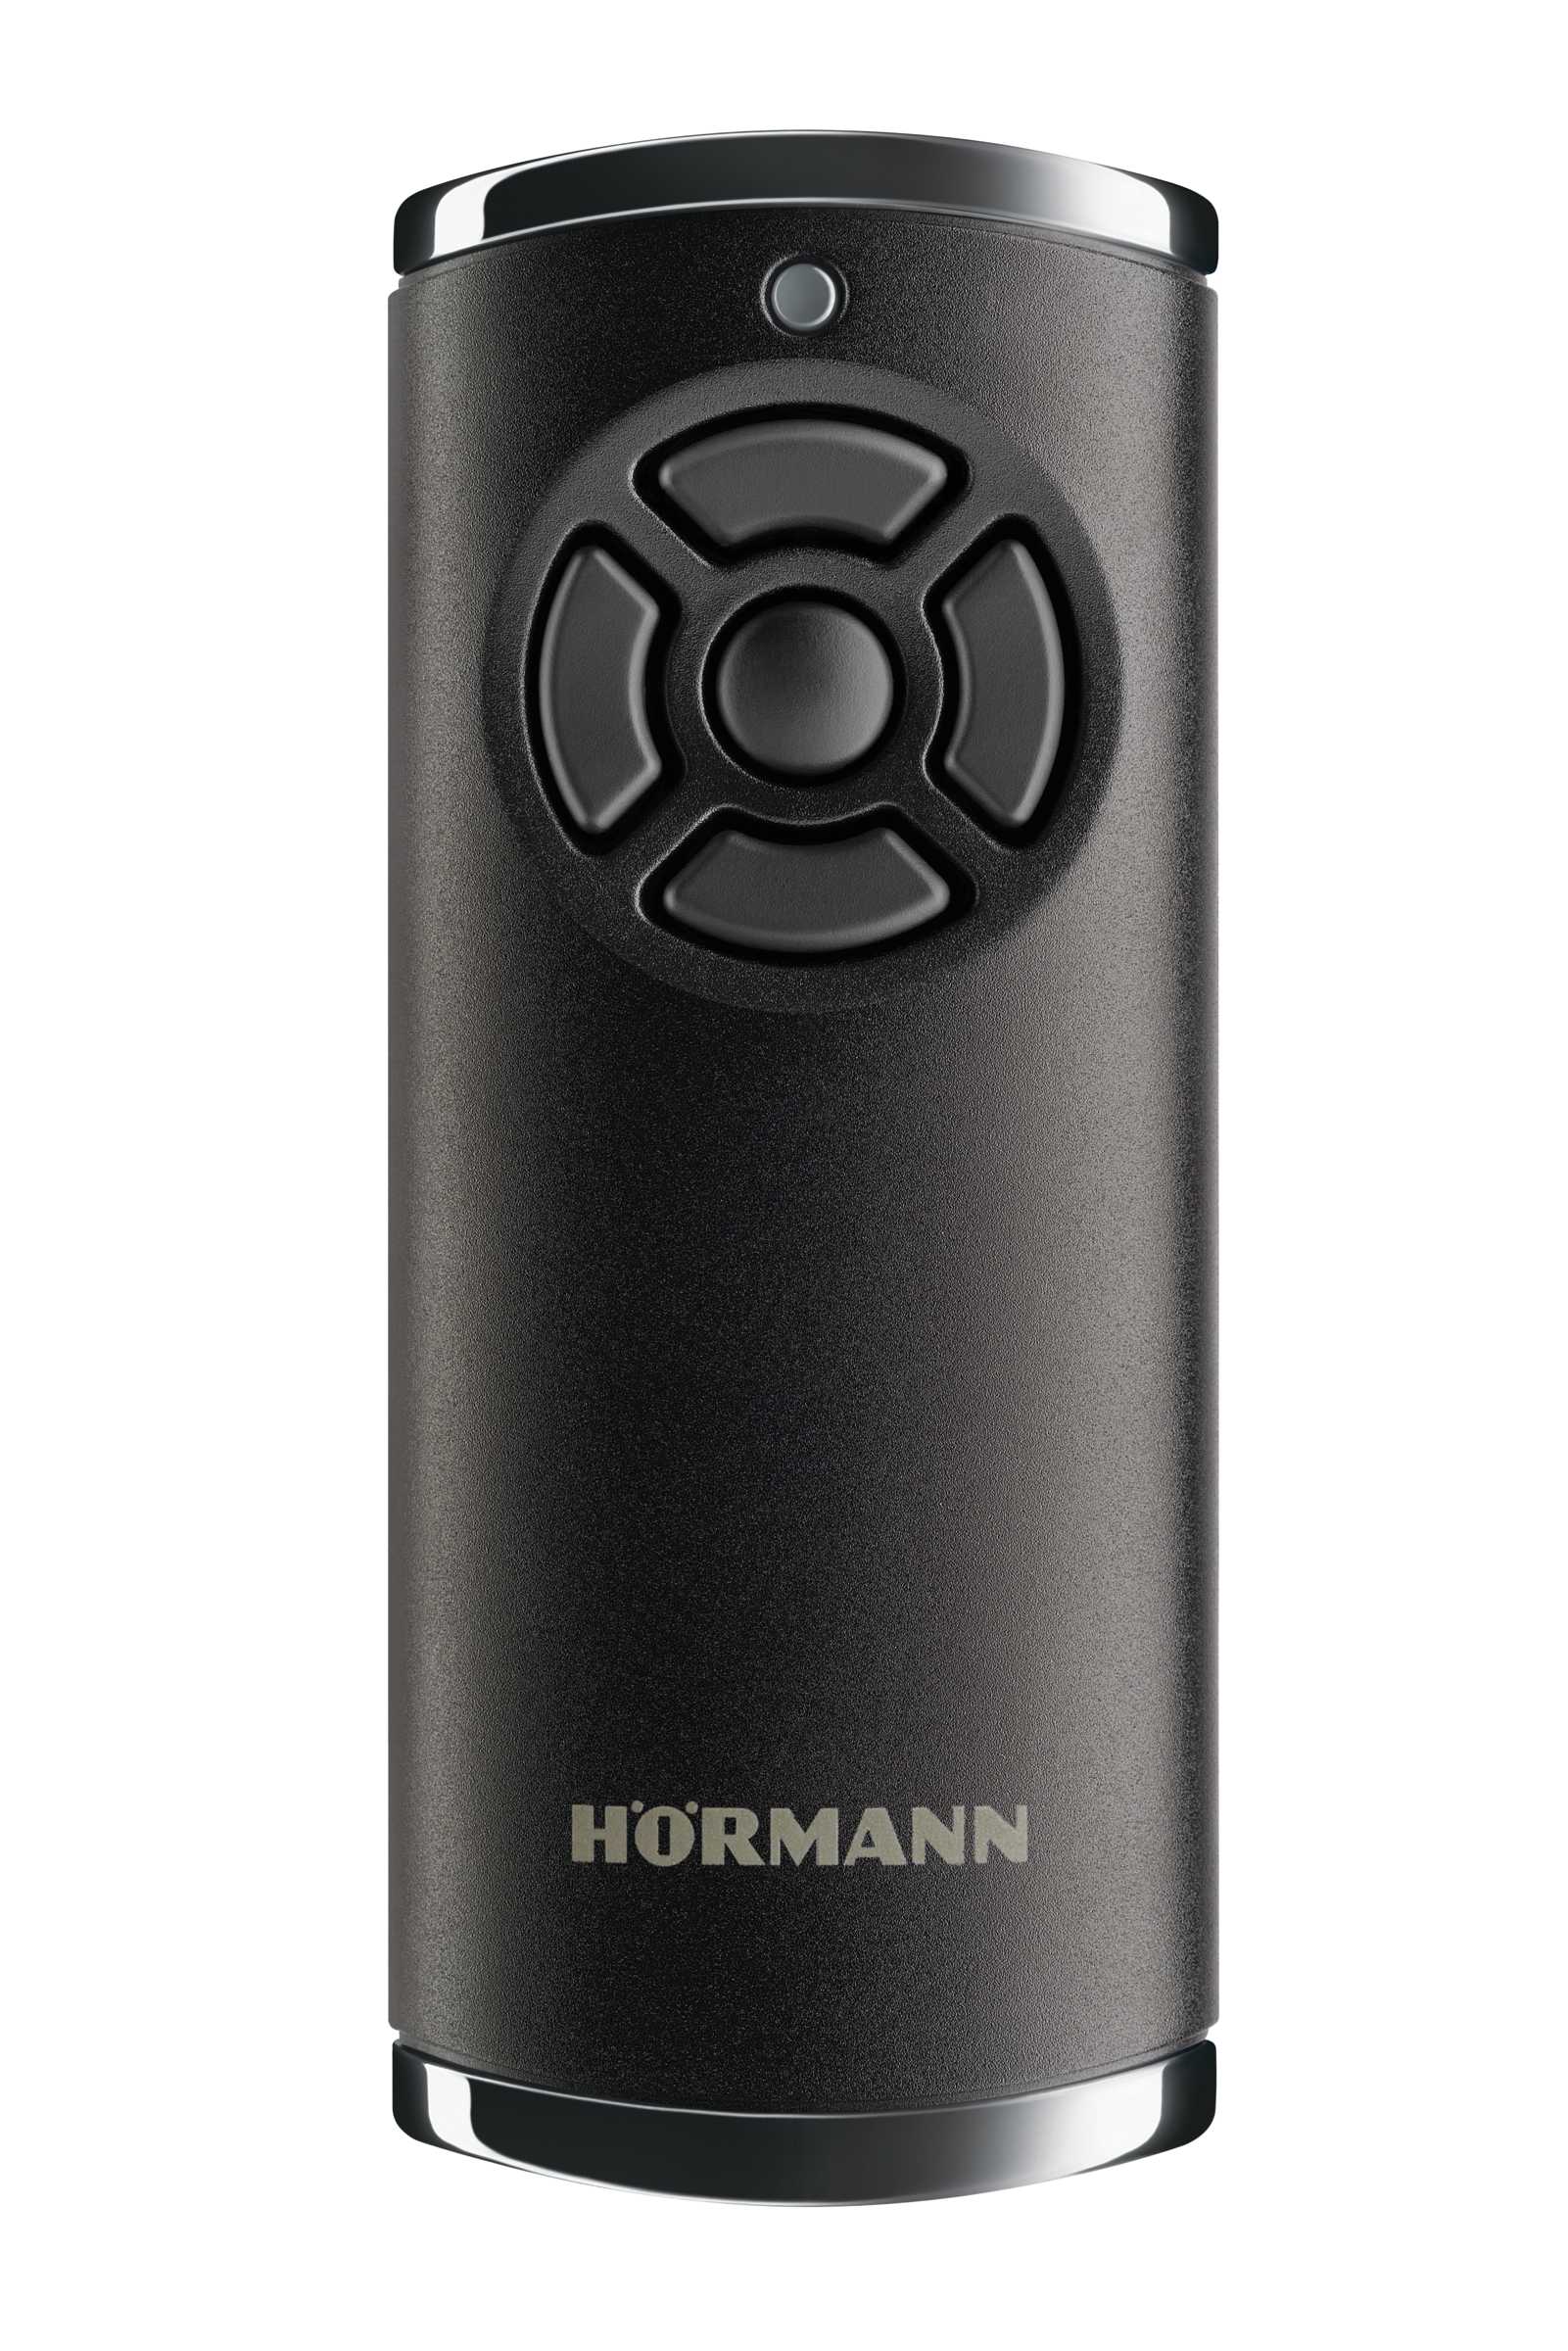 Hörmann  Handsender HS 5 BS (BiSecur-Technologie), hochglanz schwarz